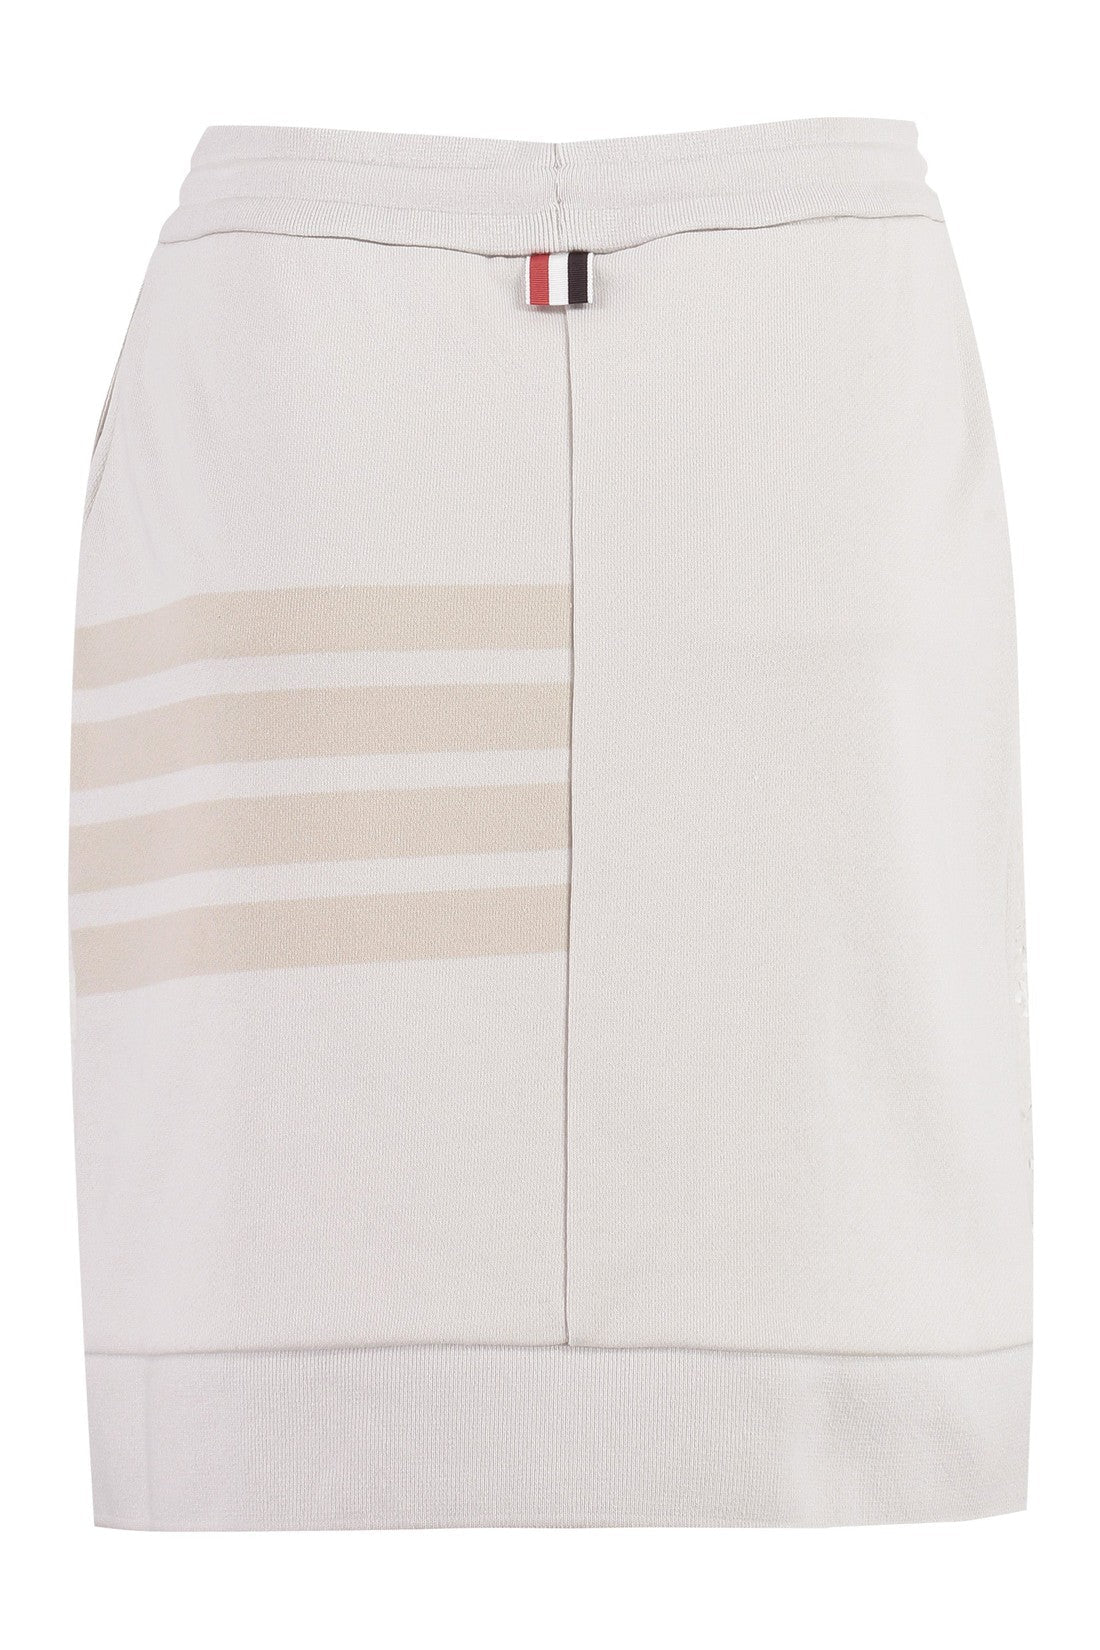 Thom Browne-OUTLET-SALE-Cotton mini-skirt-ARCHIVIST